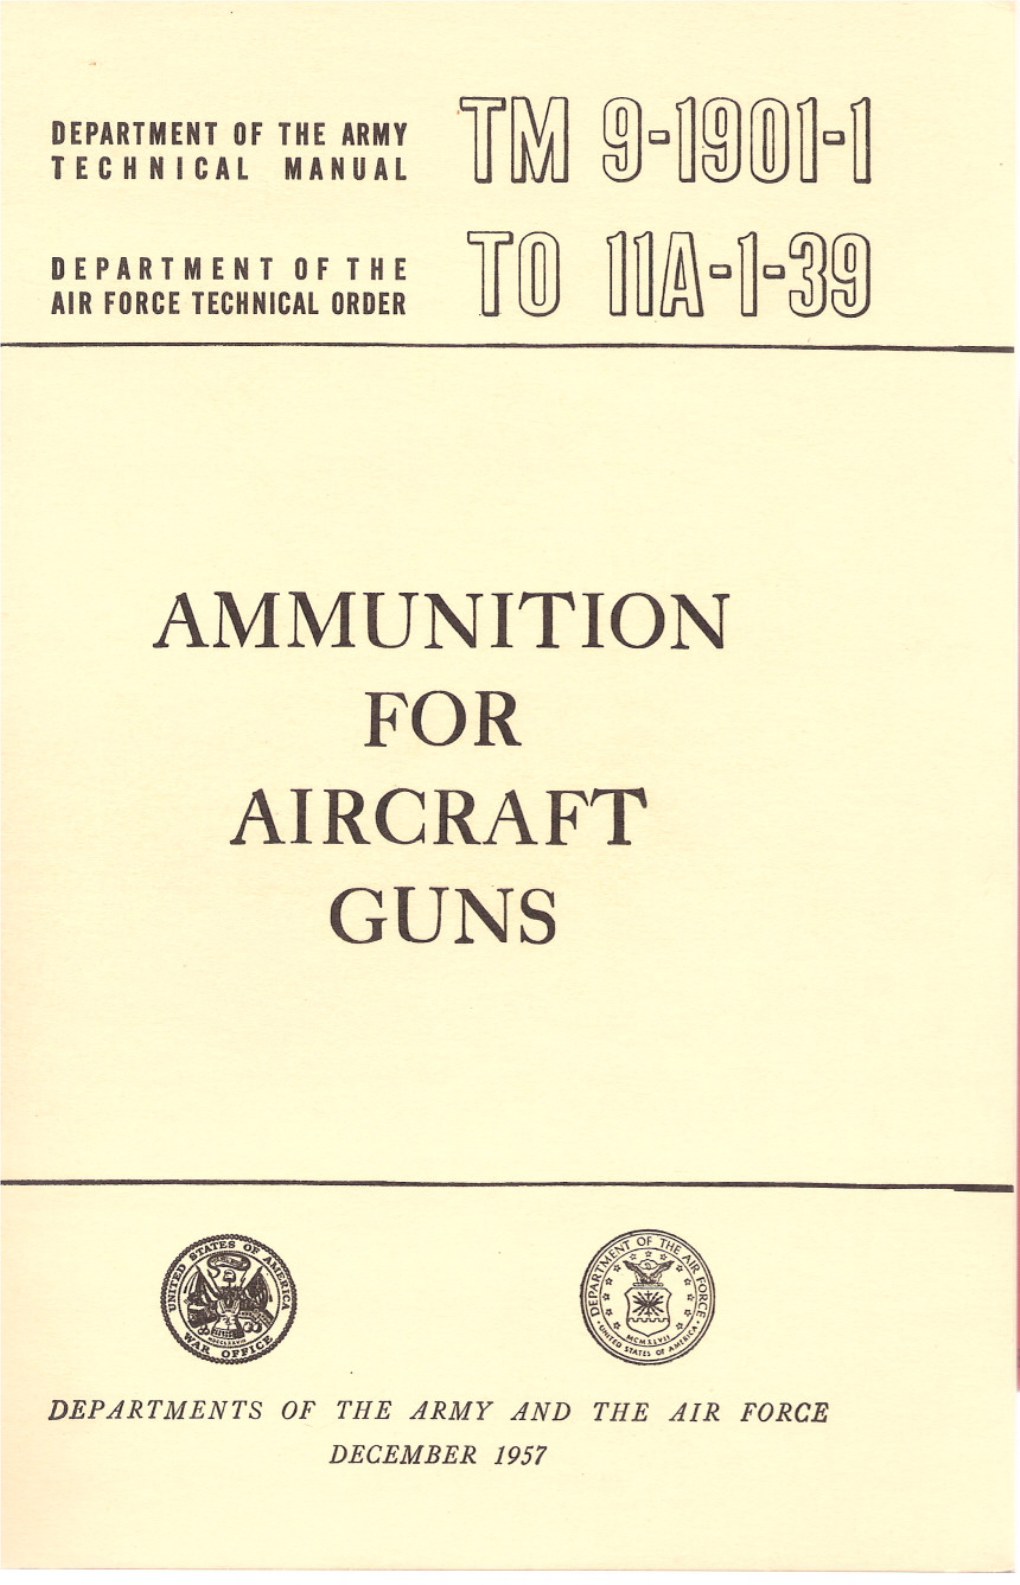 TM 9-1901-1, Ammunition for Aircraft Guns